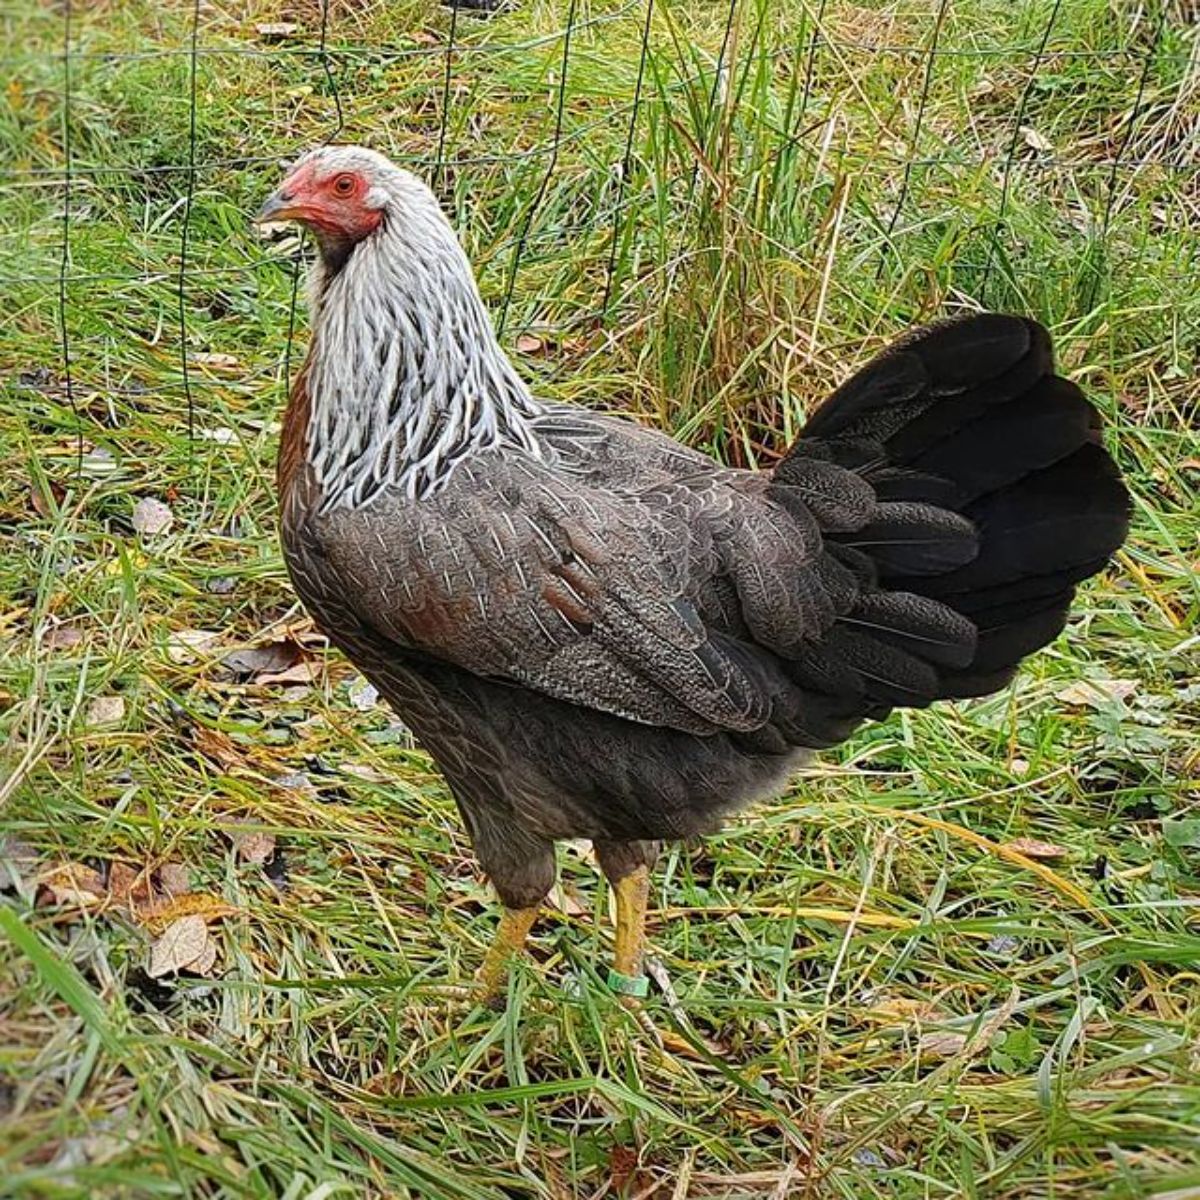 A beautiful Kraienkoppe hen in a backyard.